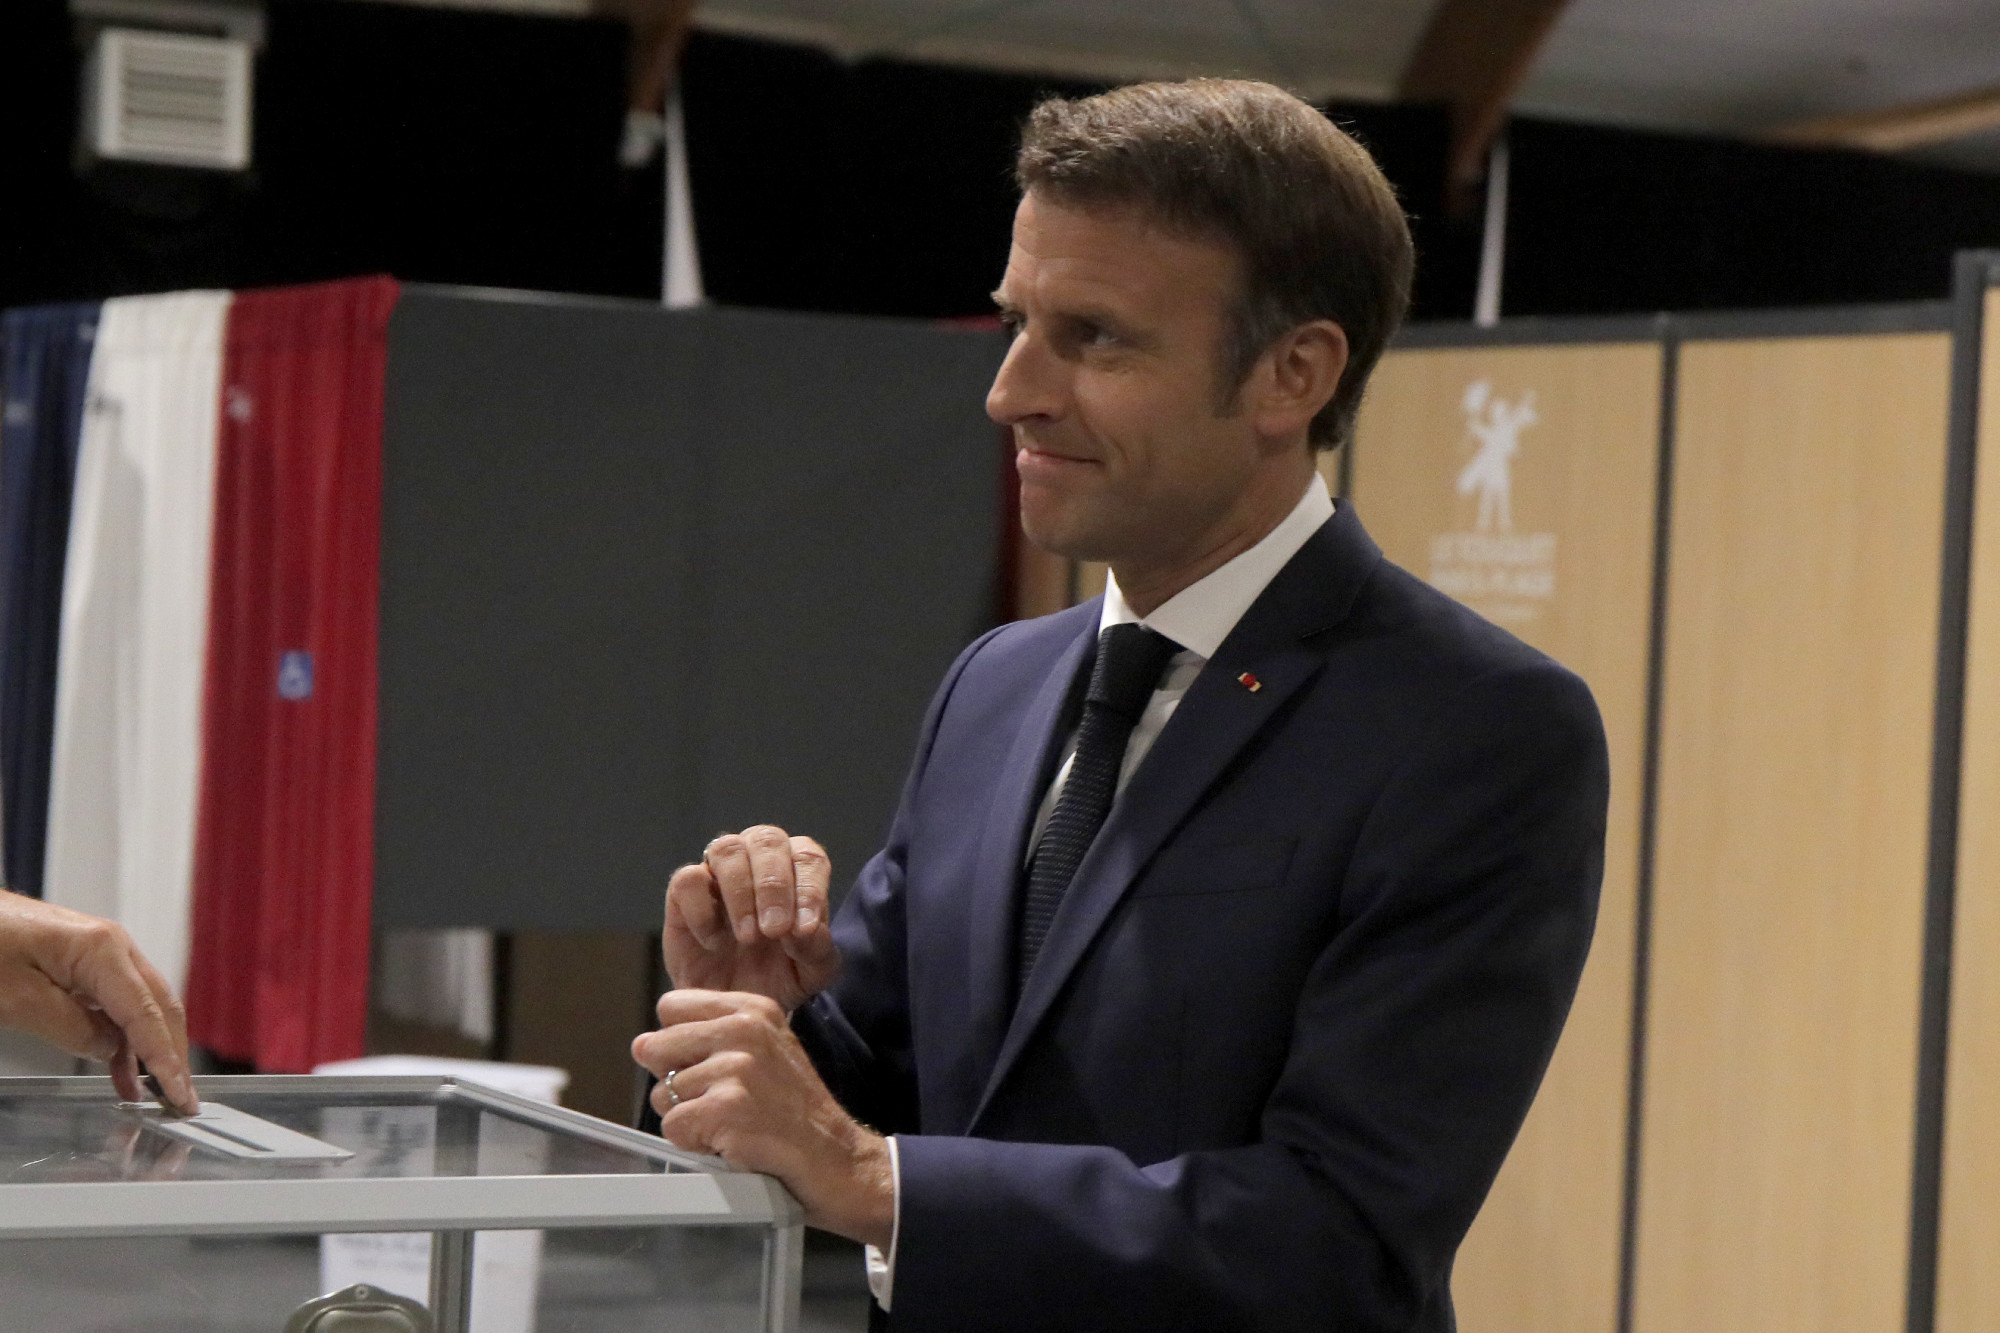 Francia választás: Macron koalíciója nyert, de elvesztették abszolút többségüket